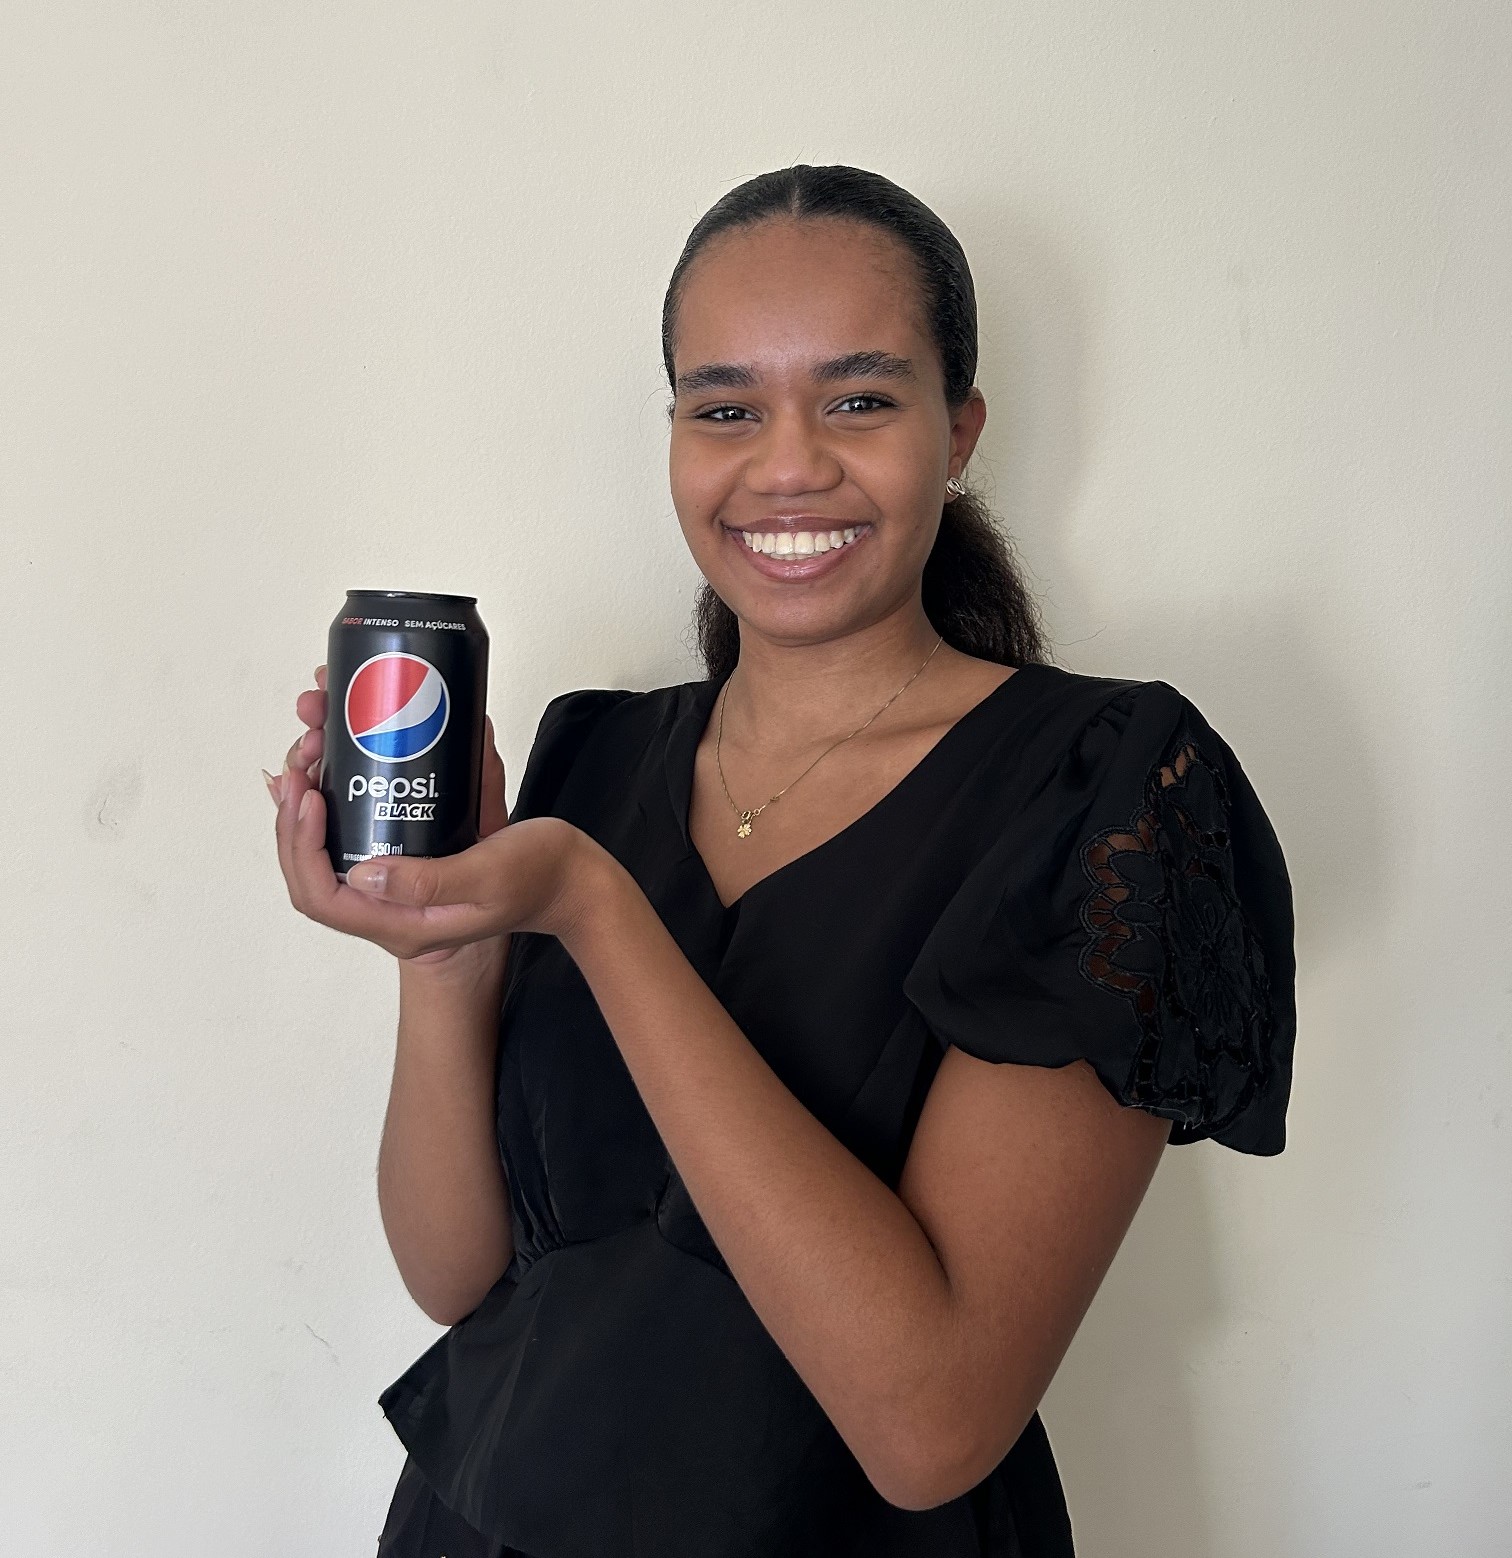 Oportunidade Única - PepsiCo Lança Programa de Estágio First Gen com Vagas em Múltiplos Estados